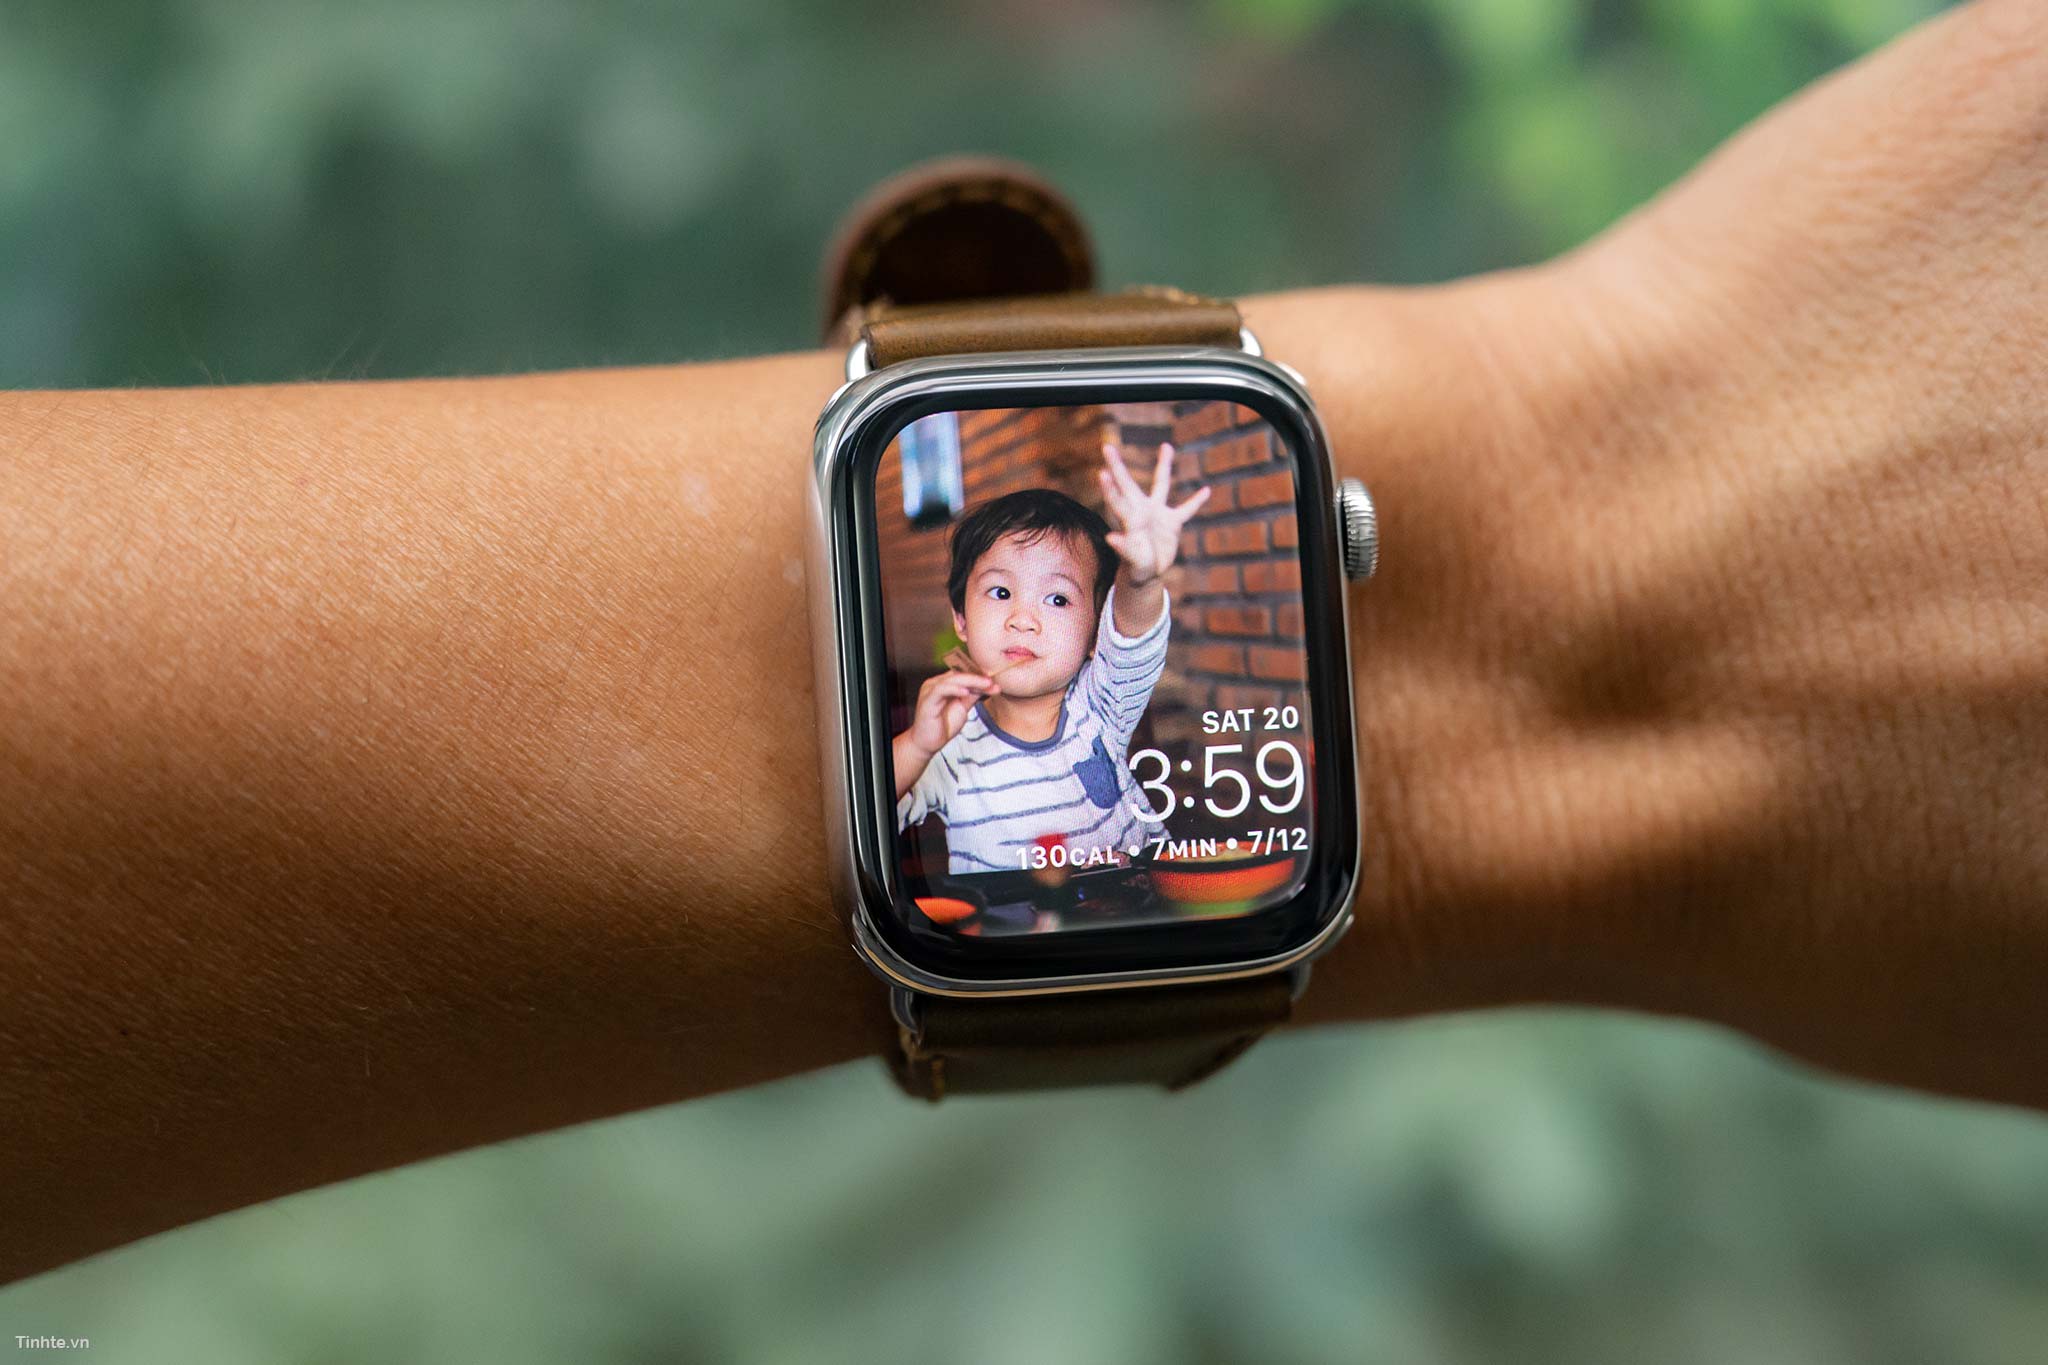 Đồng hồ thông minh Seri 5 của Apple được hội tụ đầy đủ các tính năng thông minh và thiết kế đẹp mắt. Hình ảnh sắc nét và chi tiết trên điện thoại của bạn sẽ khiến bạn không thể rời mắt khỏi chiếc đồng hồ thông minh này.